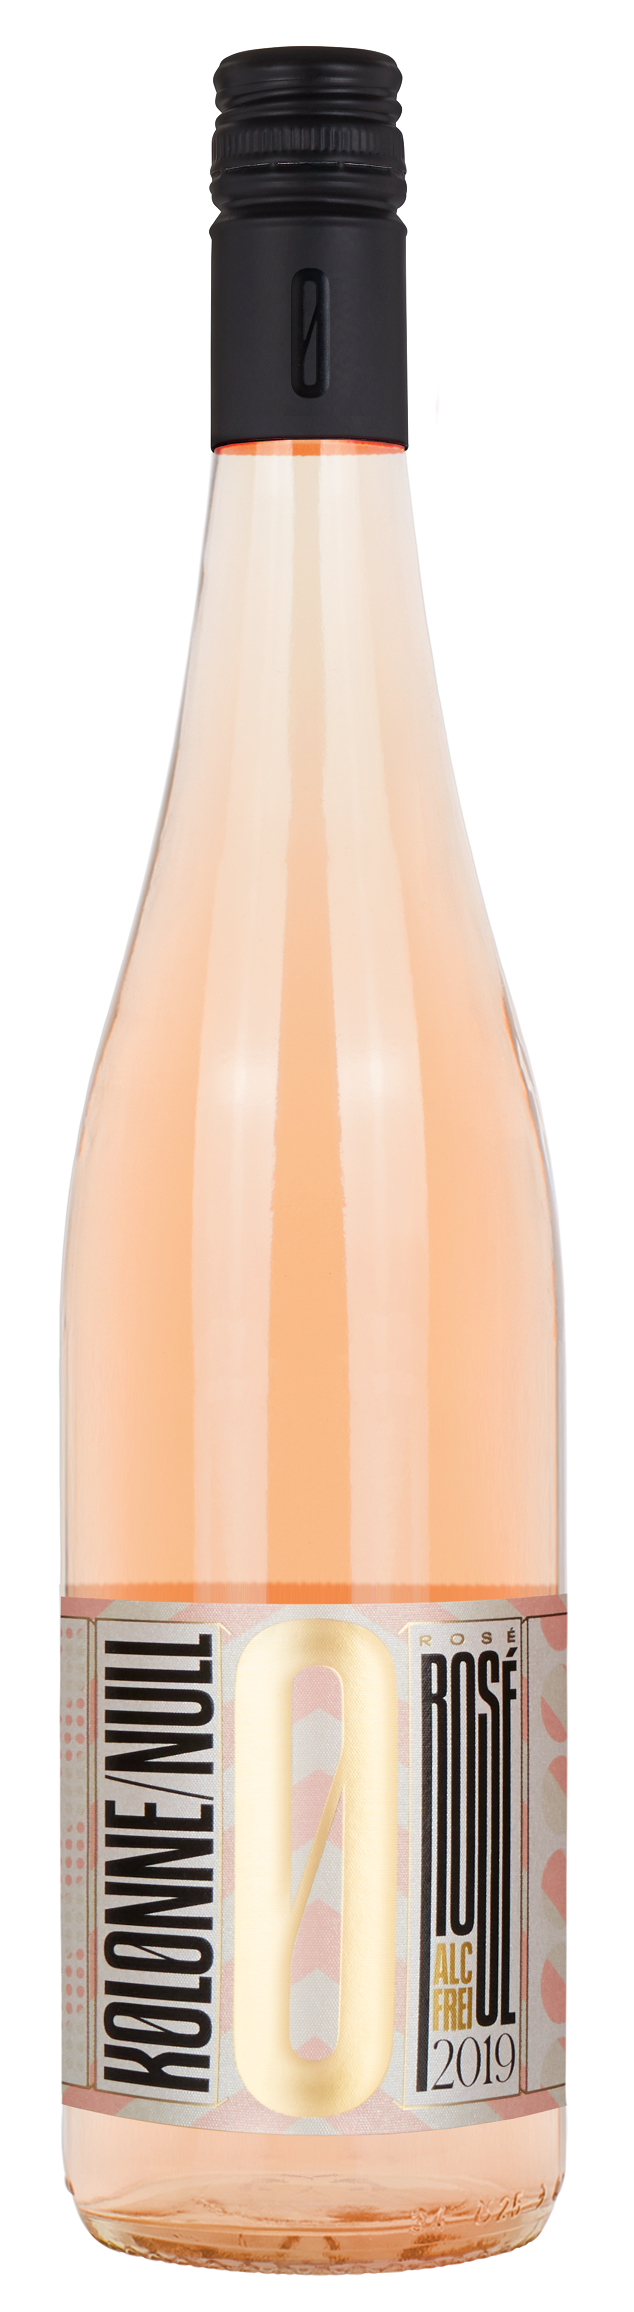 Kolonne Null Rosé Rosewein - alkoholfreier Wein - 2019 0,75l